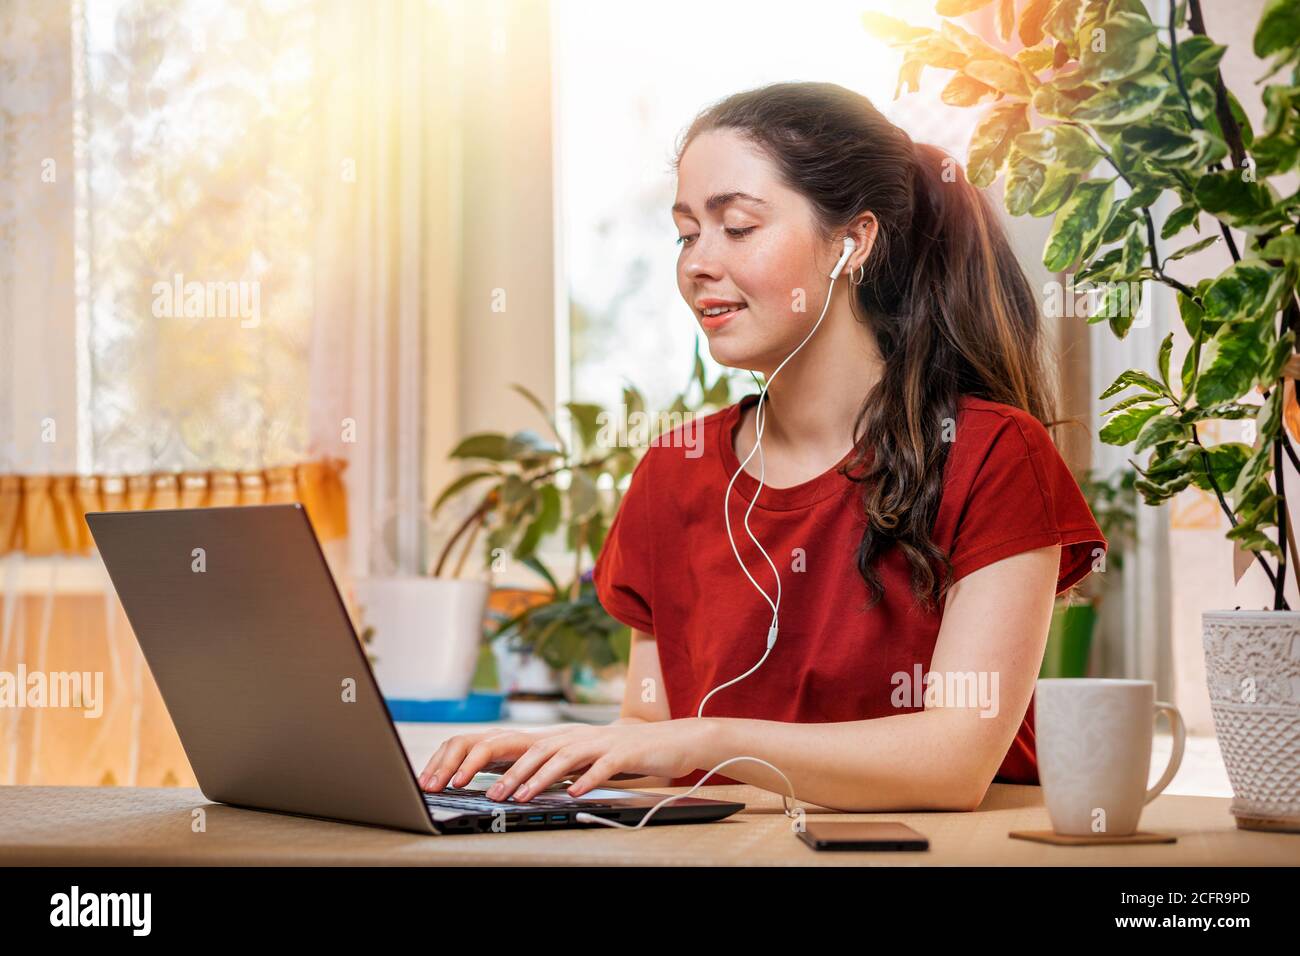 Freelance.UNA joven mujer caucásica feliz escribiendo en un ordenador portátil con auriculares en sus oídos.Home environment.Concept de cuarentena, teletrabajo y dista Foto de stock